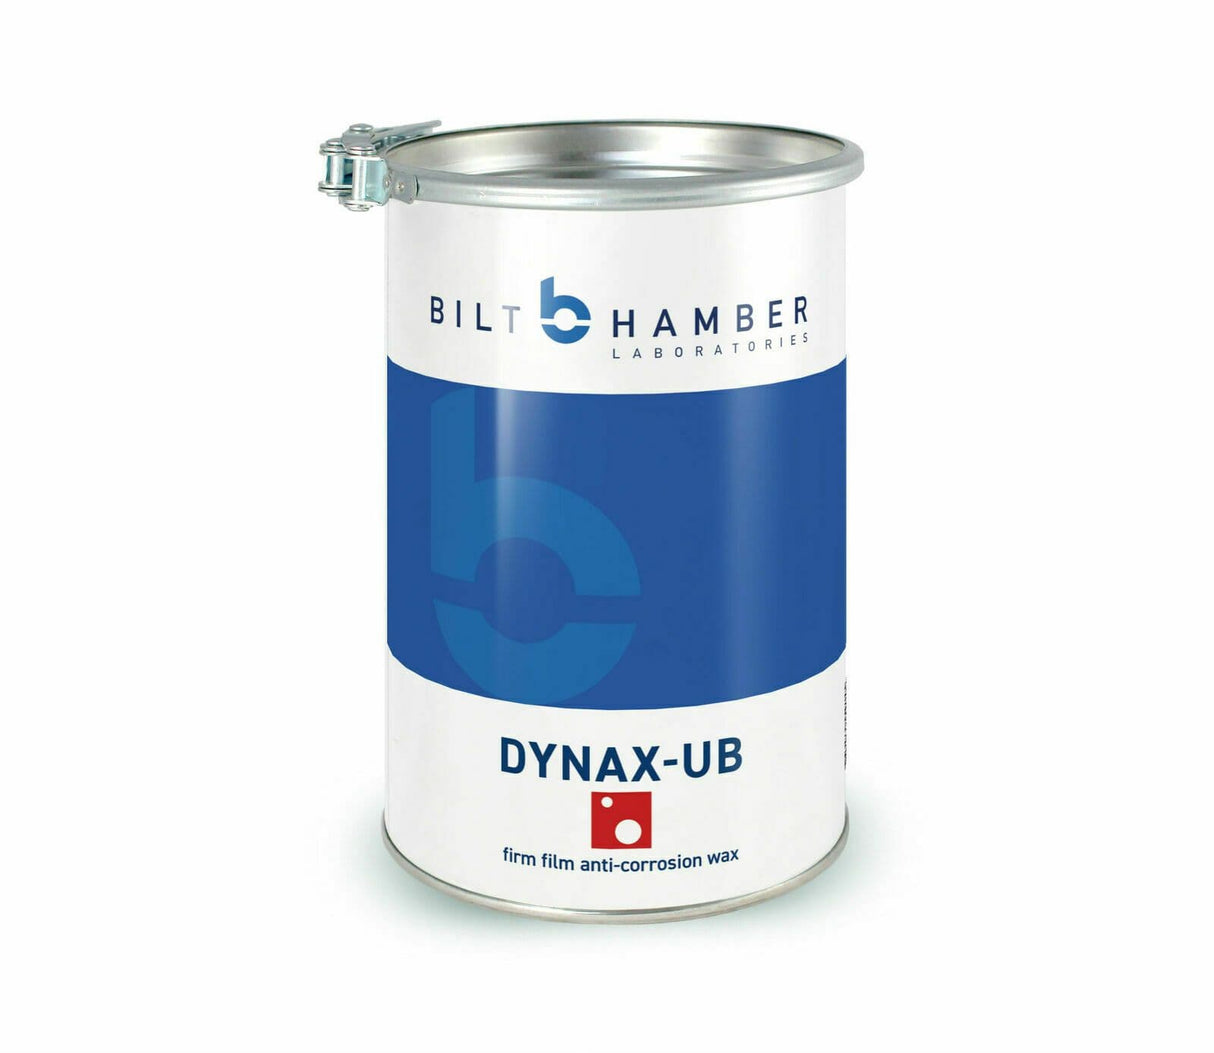 Bilt Hamber Dynax-UB Firm Film Anti-Corrosion Wax Pail